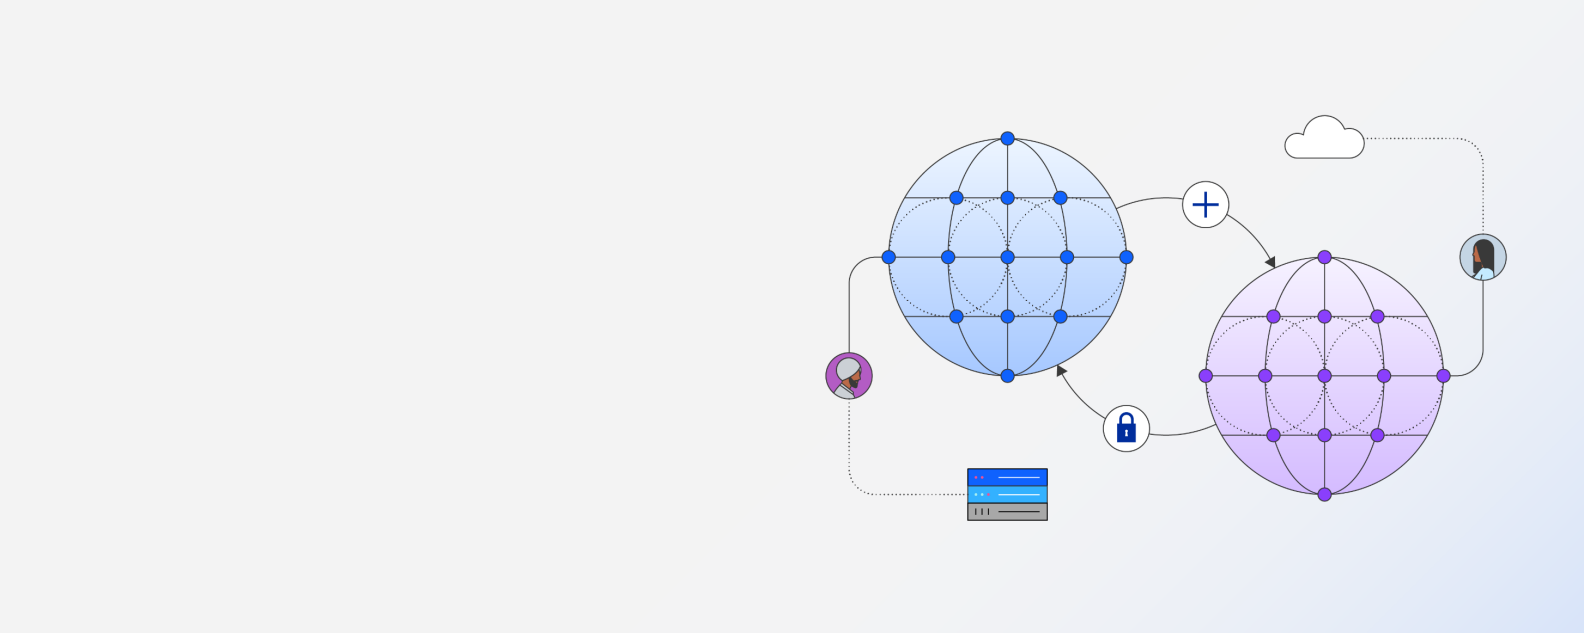 メインおよびセカンダリDNSサーバーを表す2つの接続された大きな球体に接続されている2人のユーザーのイラスト